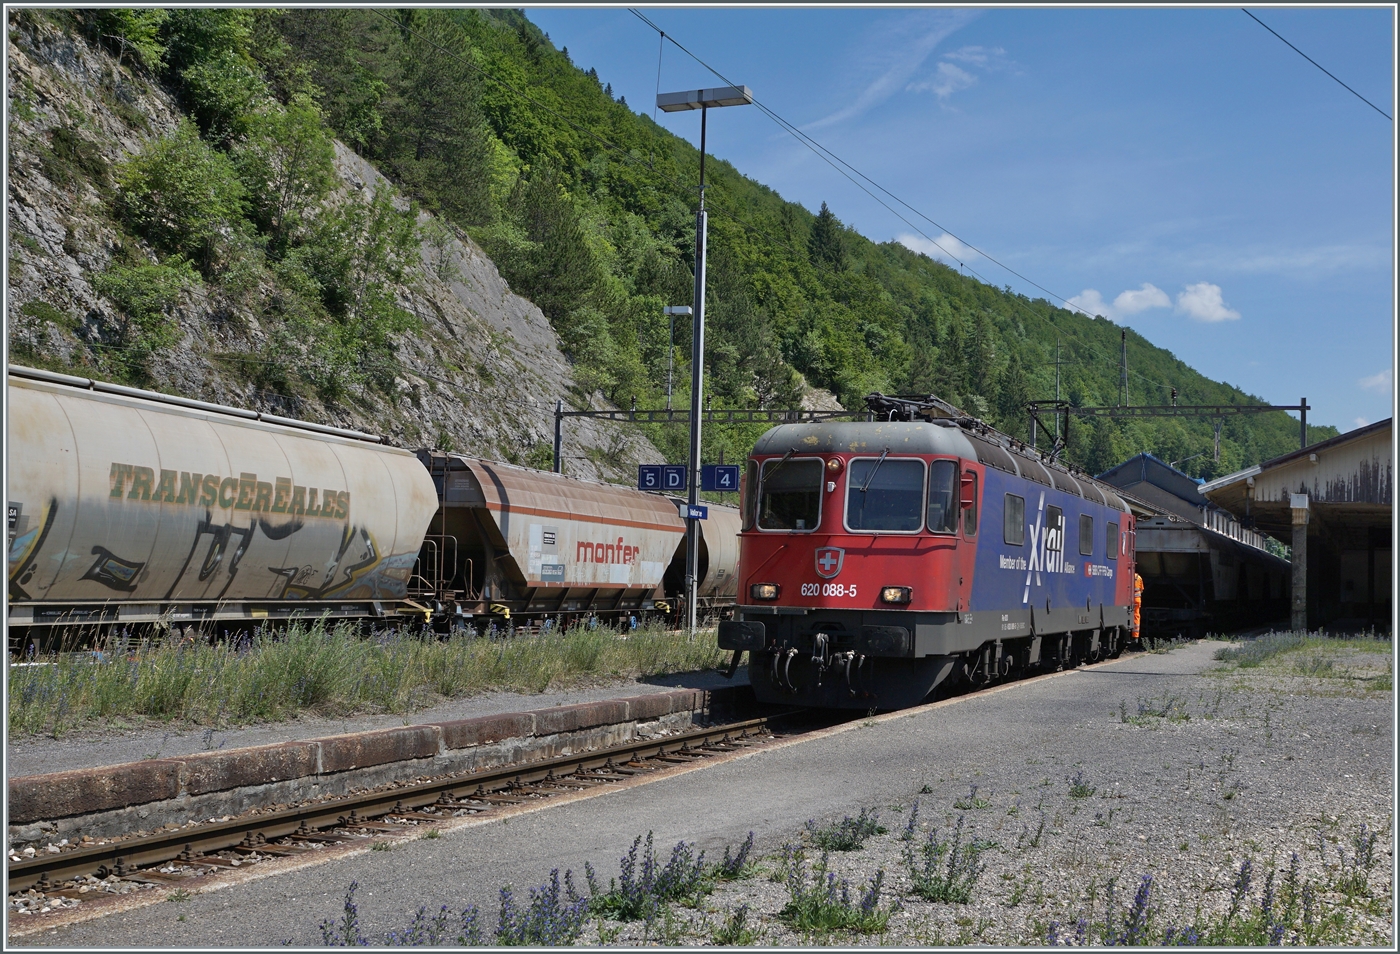 Die SBB Re 6/6 11688 (Re 620 088-5)  Linthal  hat den  Spaghetti -Zug von Domodossola II nach Vallorbe gebracht und rangiert nun für die Übernahme des Gegenzugs.

16. Juni 2022